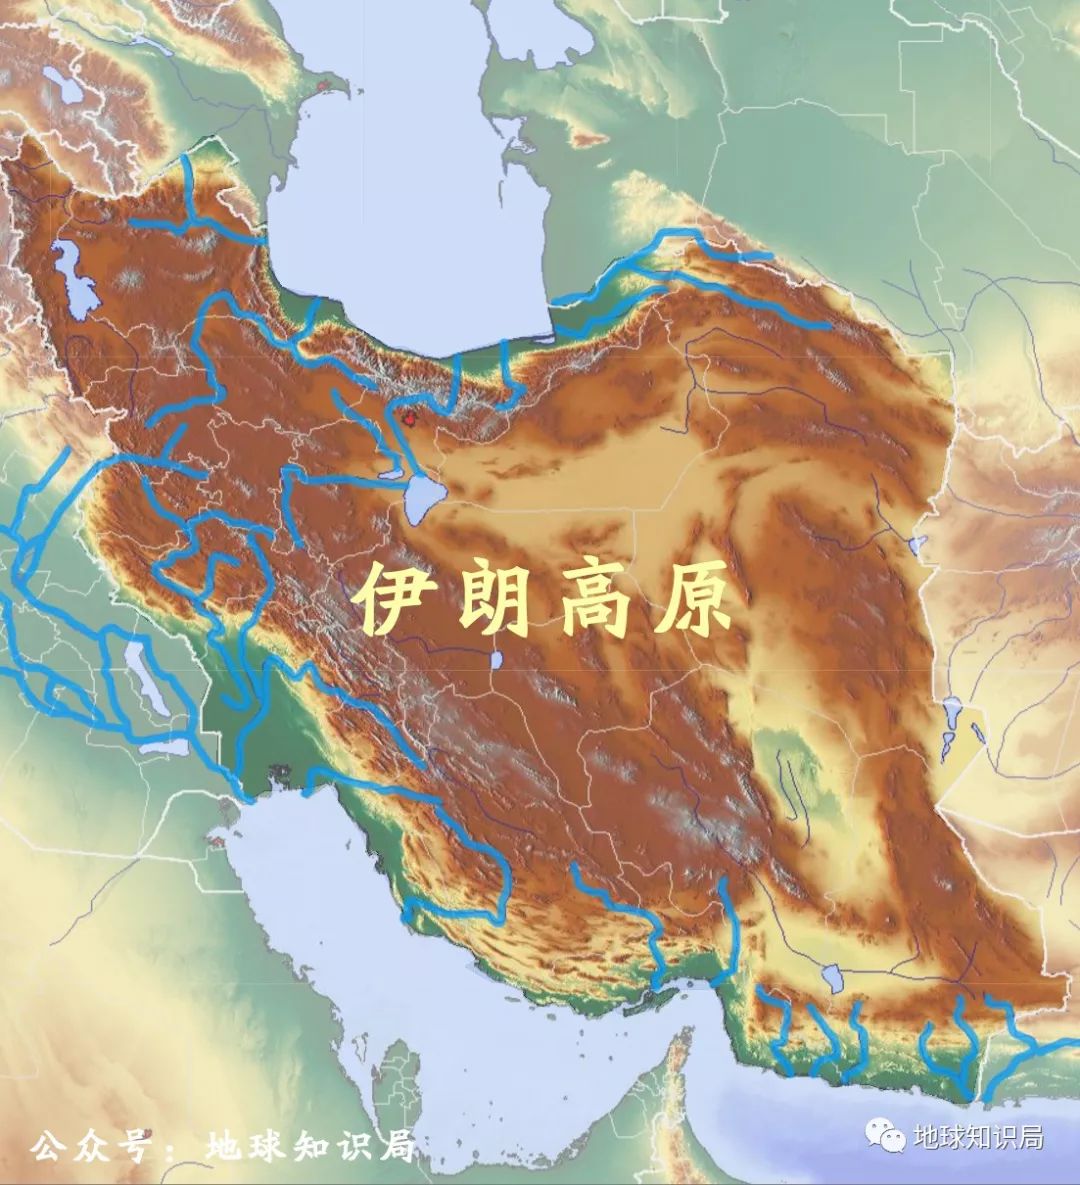 去摸清伊朗国内情况,并调查波斯境内是否有去往印度边境可通航的河流